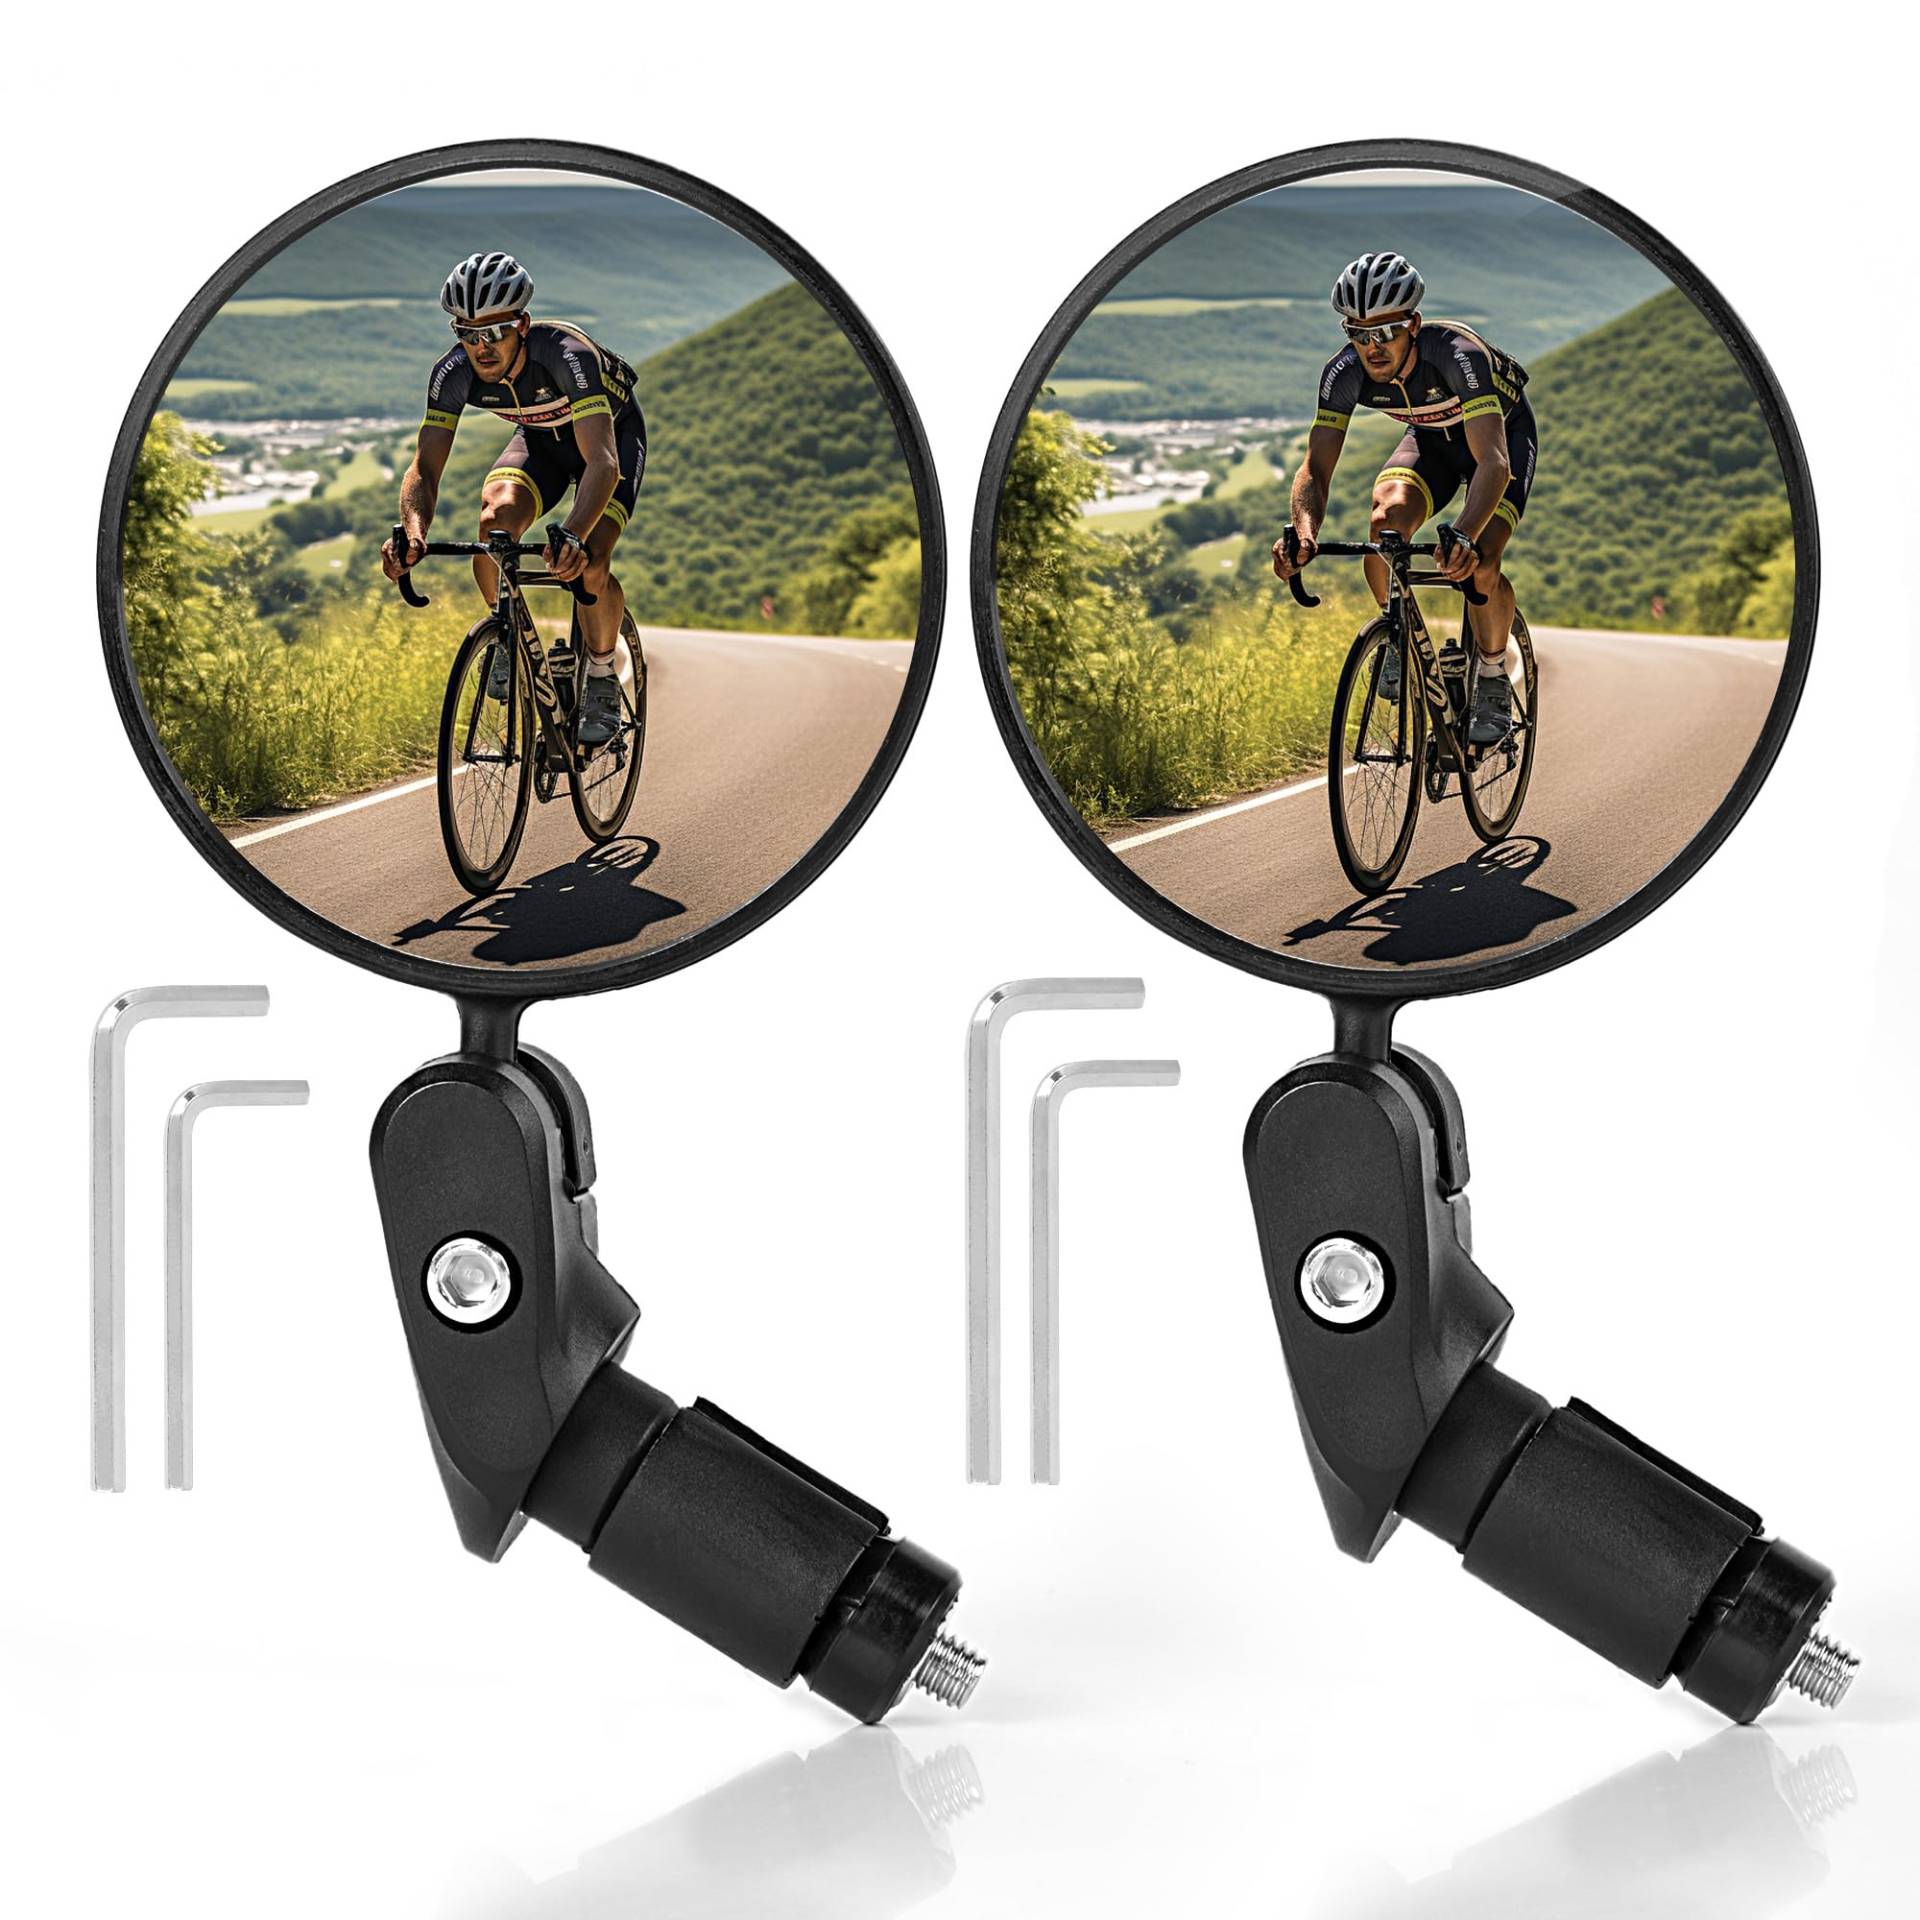 AiQInu Fahrradspiegel, HD Glas konvexe Linse Fahrrad Spiegel für Lenker 18-22 mm, 360° drehbarer Fahrradrückspiegel für Fahrrad, Mountainbike, Rennrad (2 Stück) von AiQInu